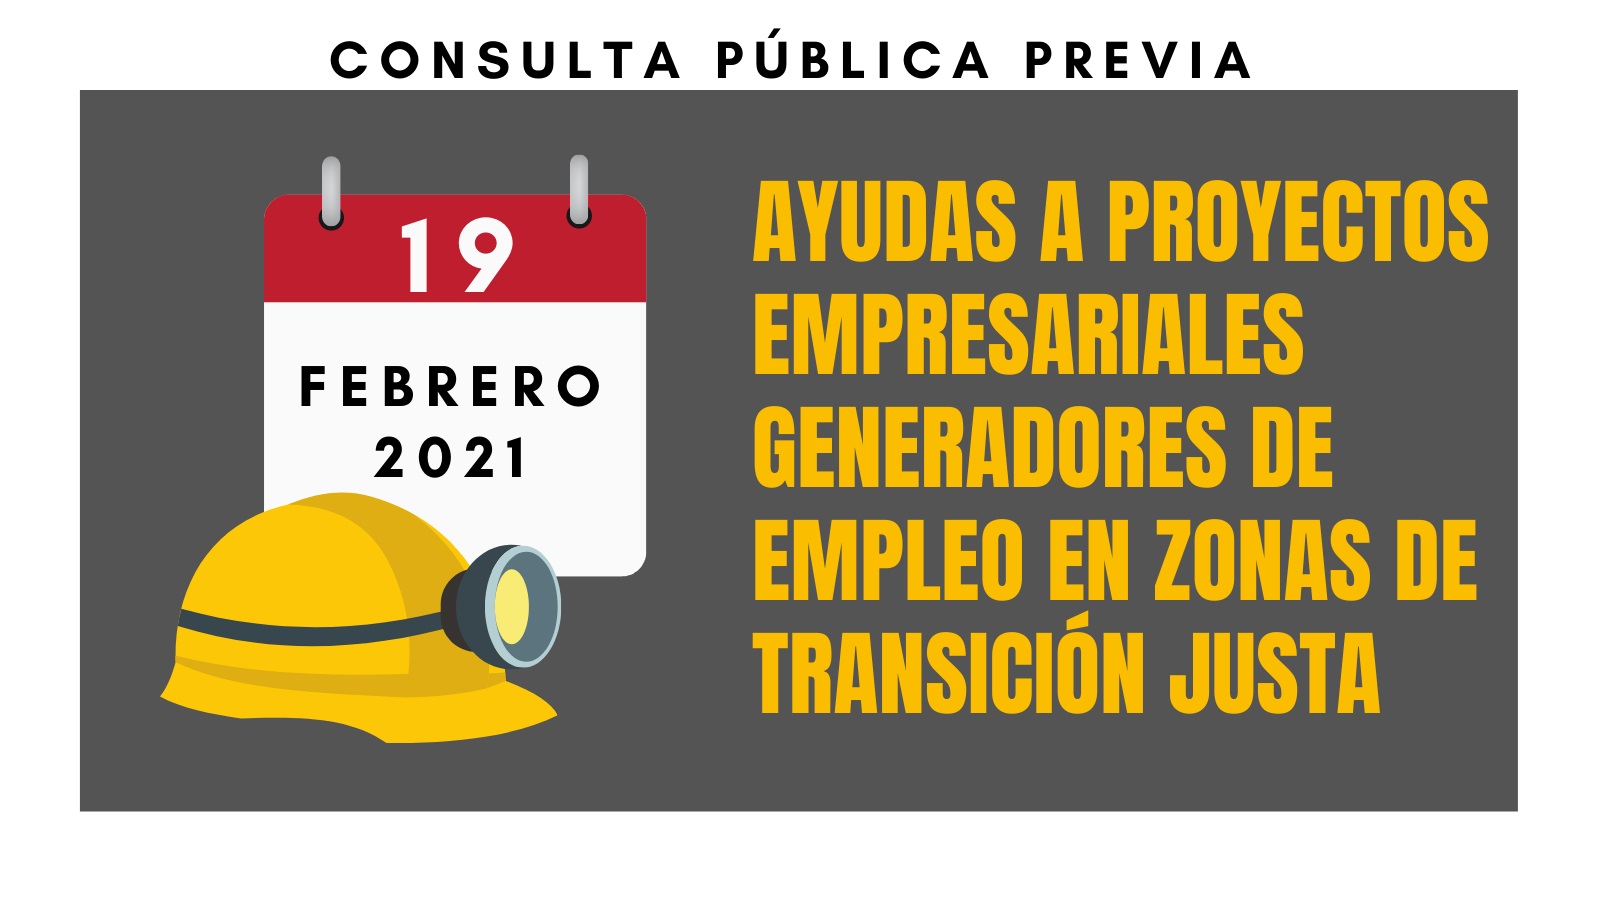 20210129_04 Proyectos empleo en zonas de transición justa